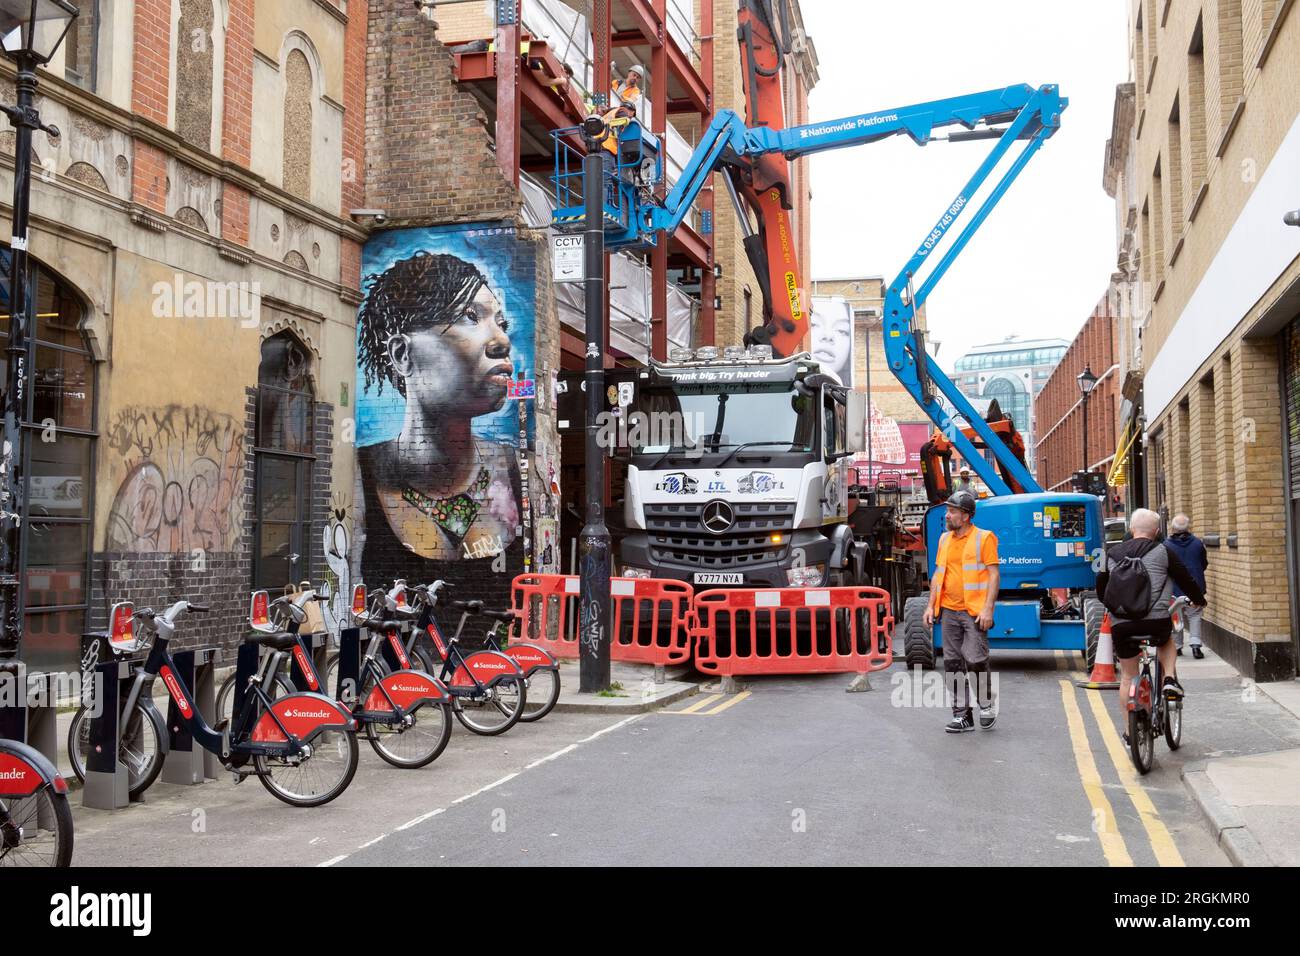 Straße gesperrt durch Bauwagen mit Kran und Cherrypicker Fahrzeuge schwarz Frauengemälde Spitalfields East London E1 UK England KATHY DEWITT Stockfoto